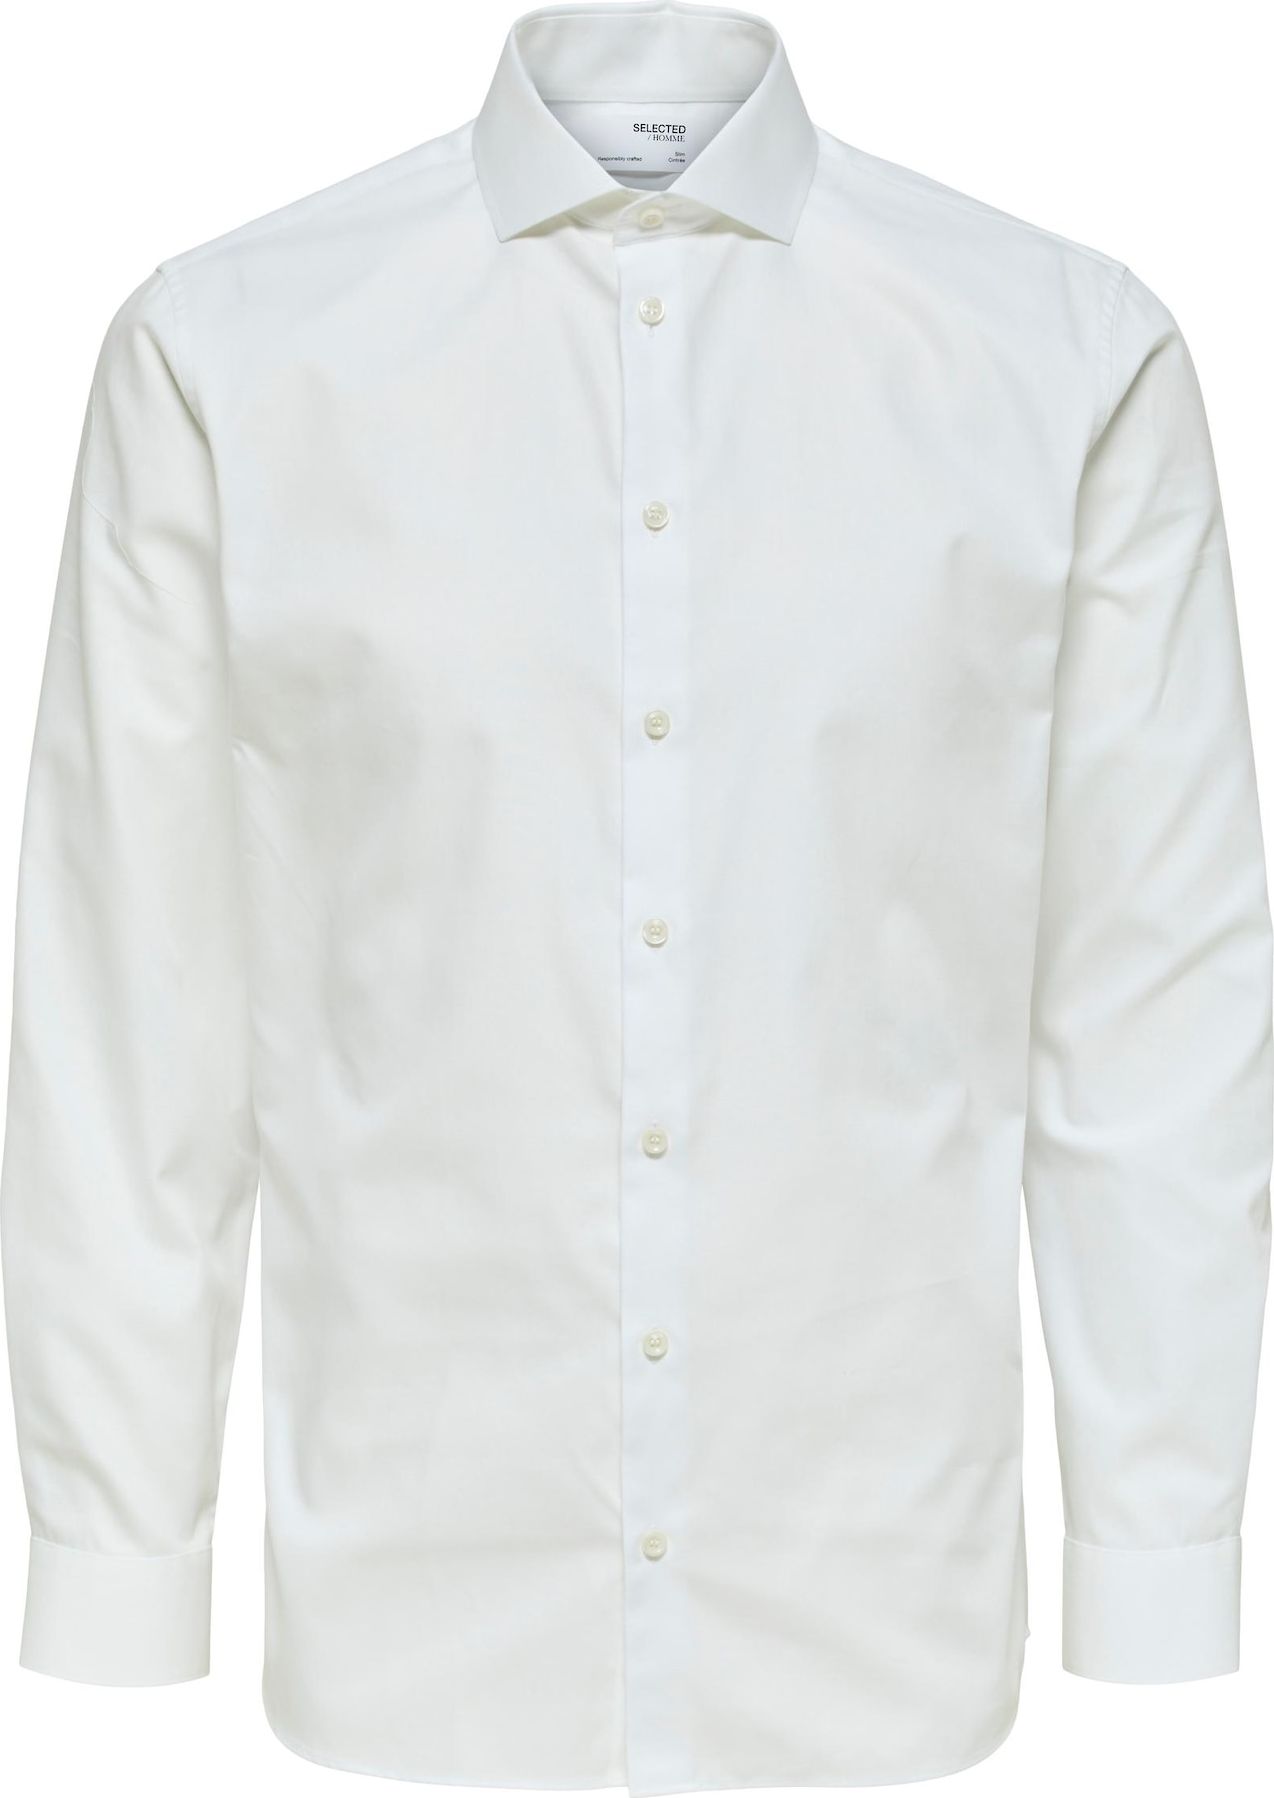 Společenská košile 'Ethan' Selected Homme přírodní bílá